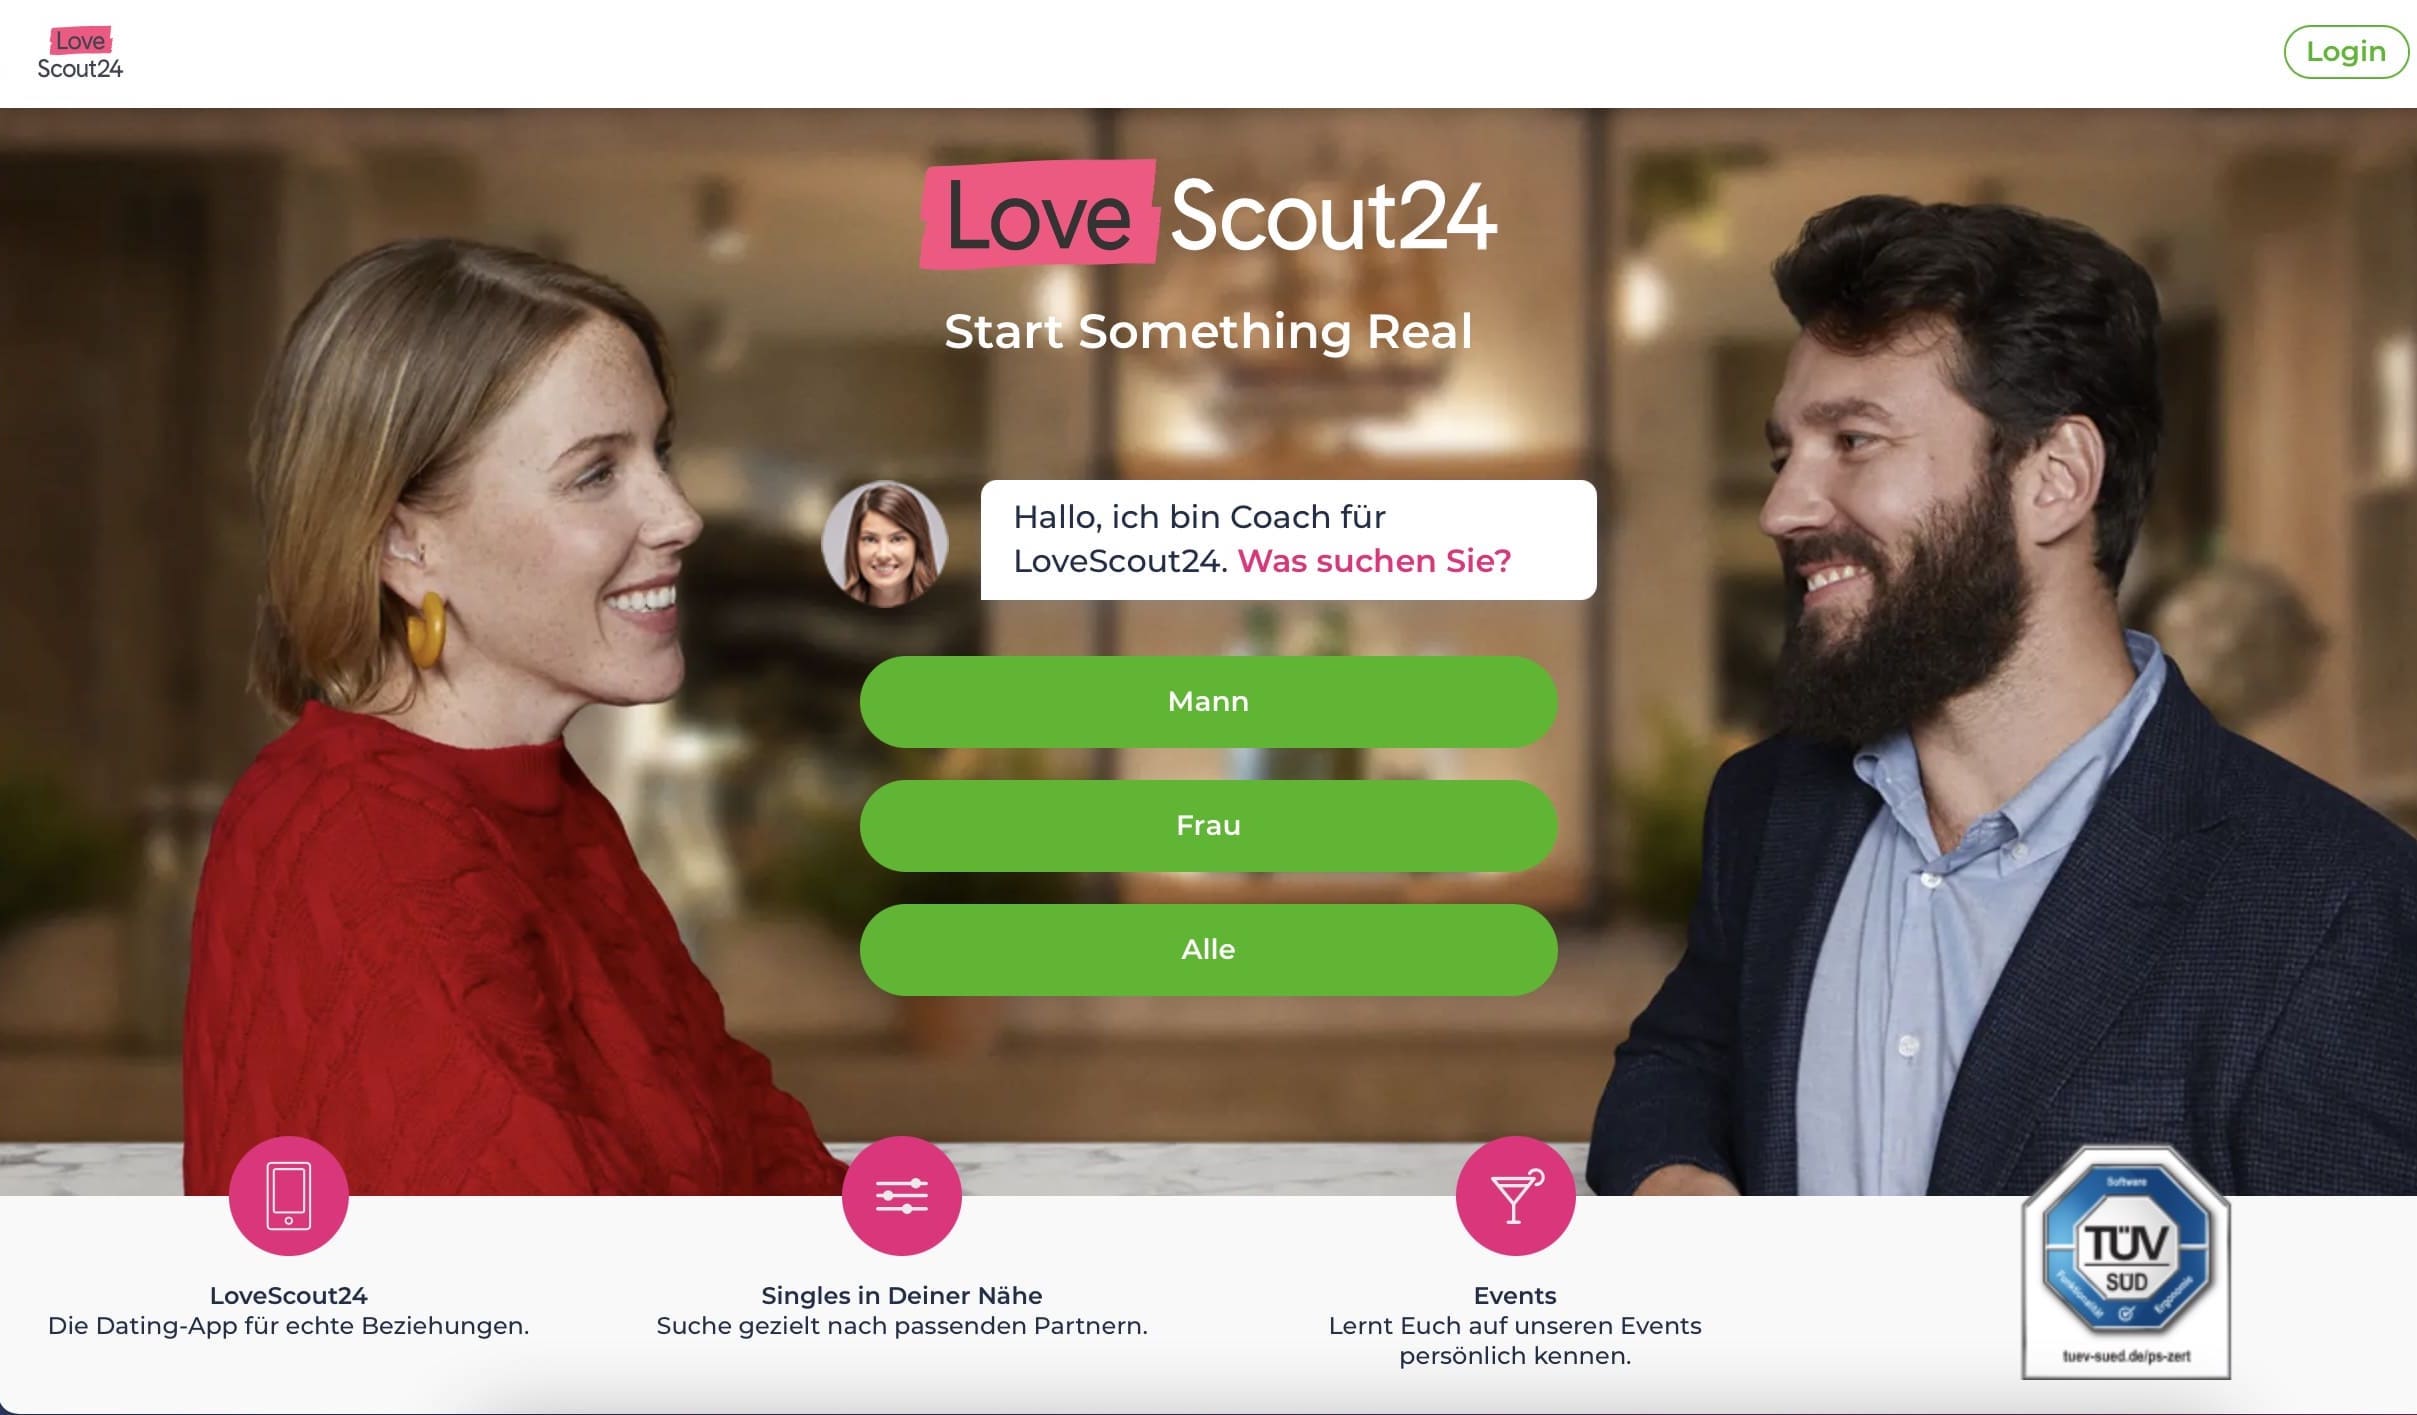 Die Singlebörse Lovescout24 ist zugleich auch die Partnerbörse neu.de